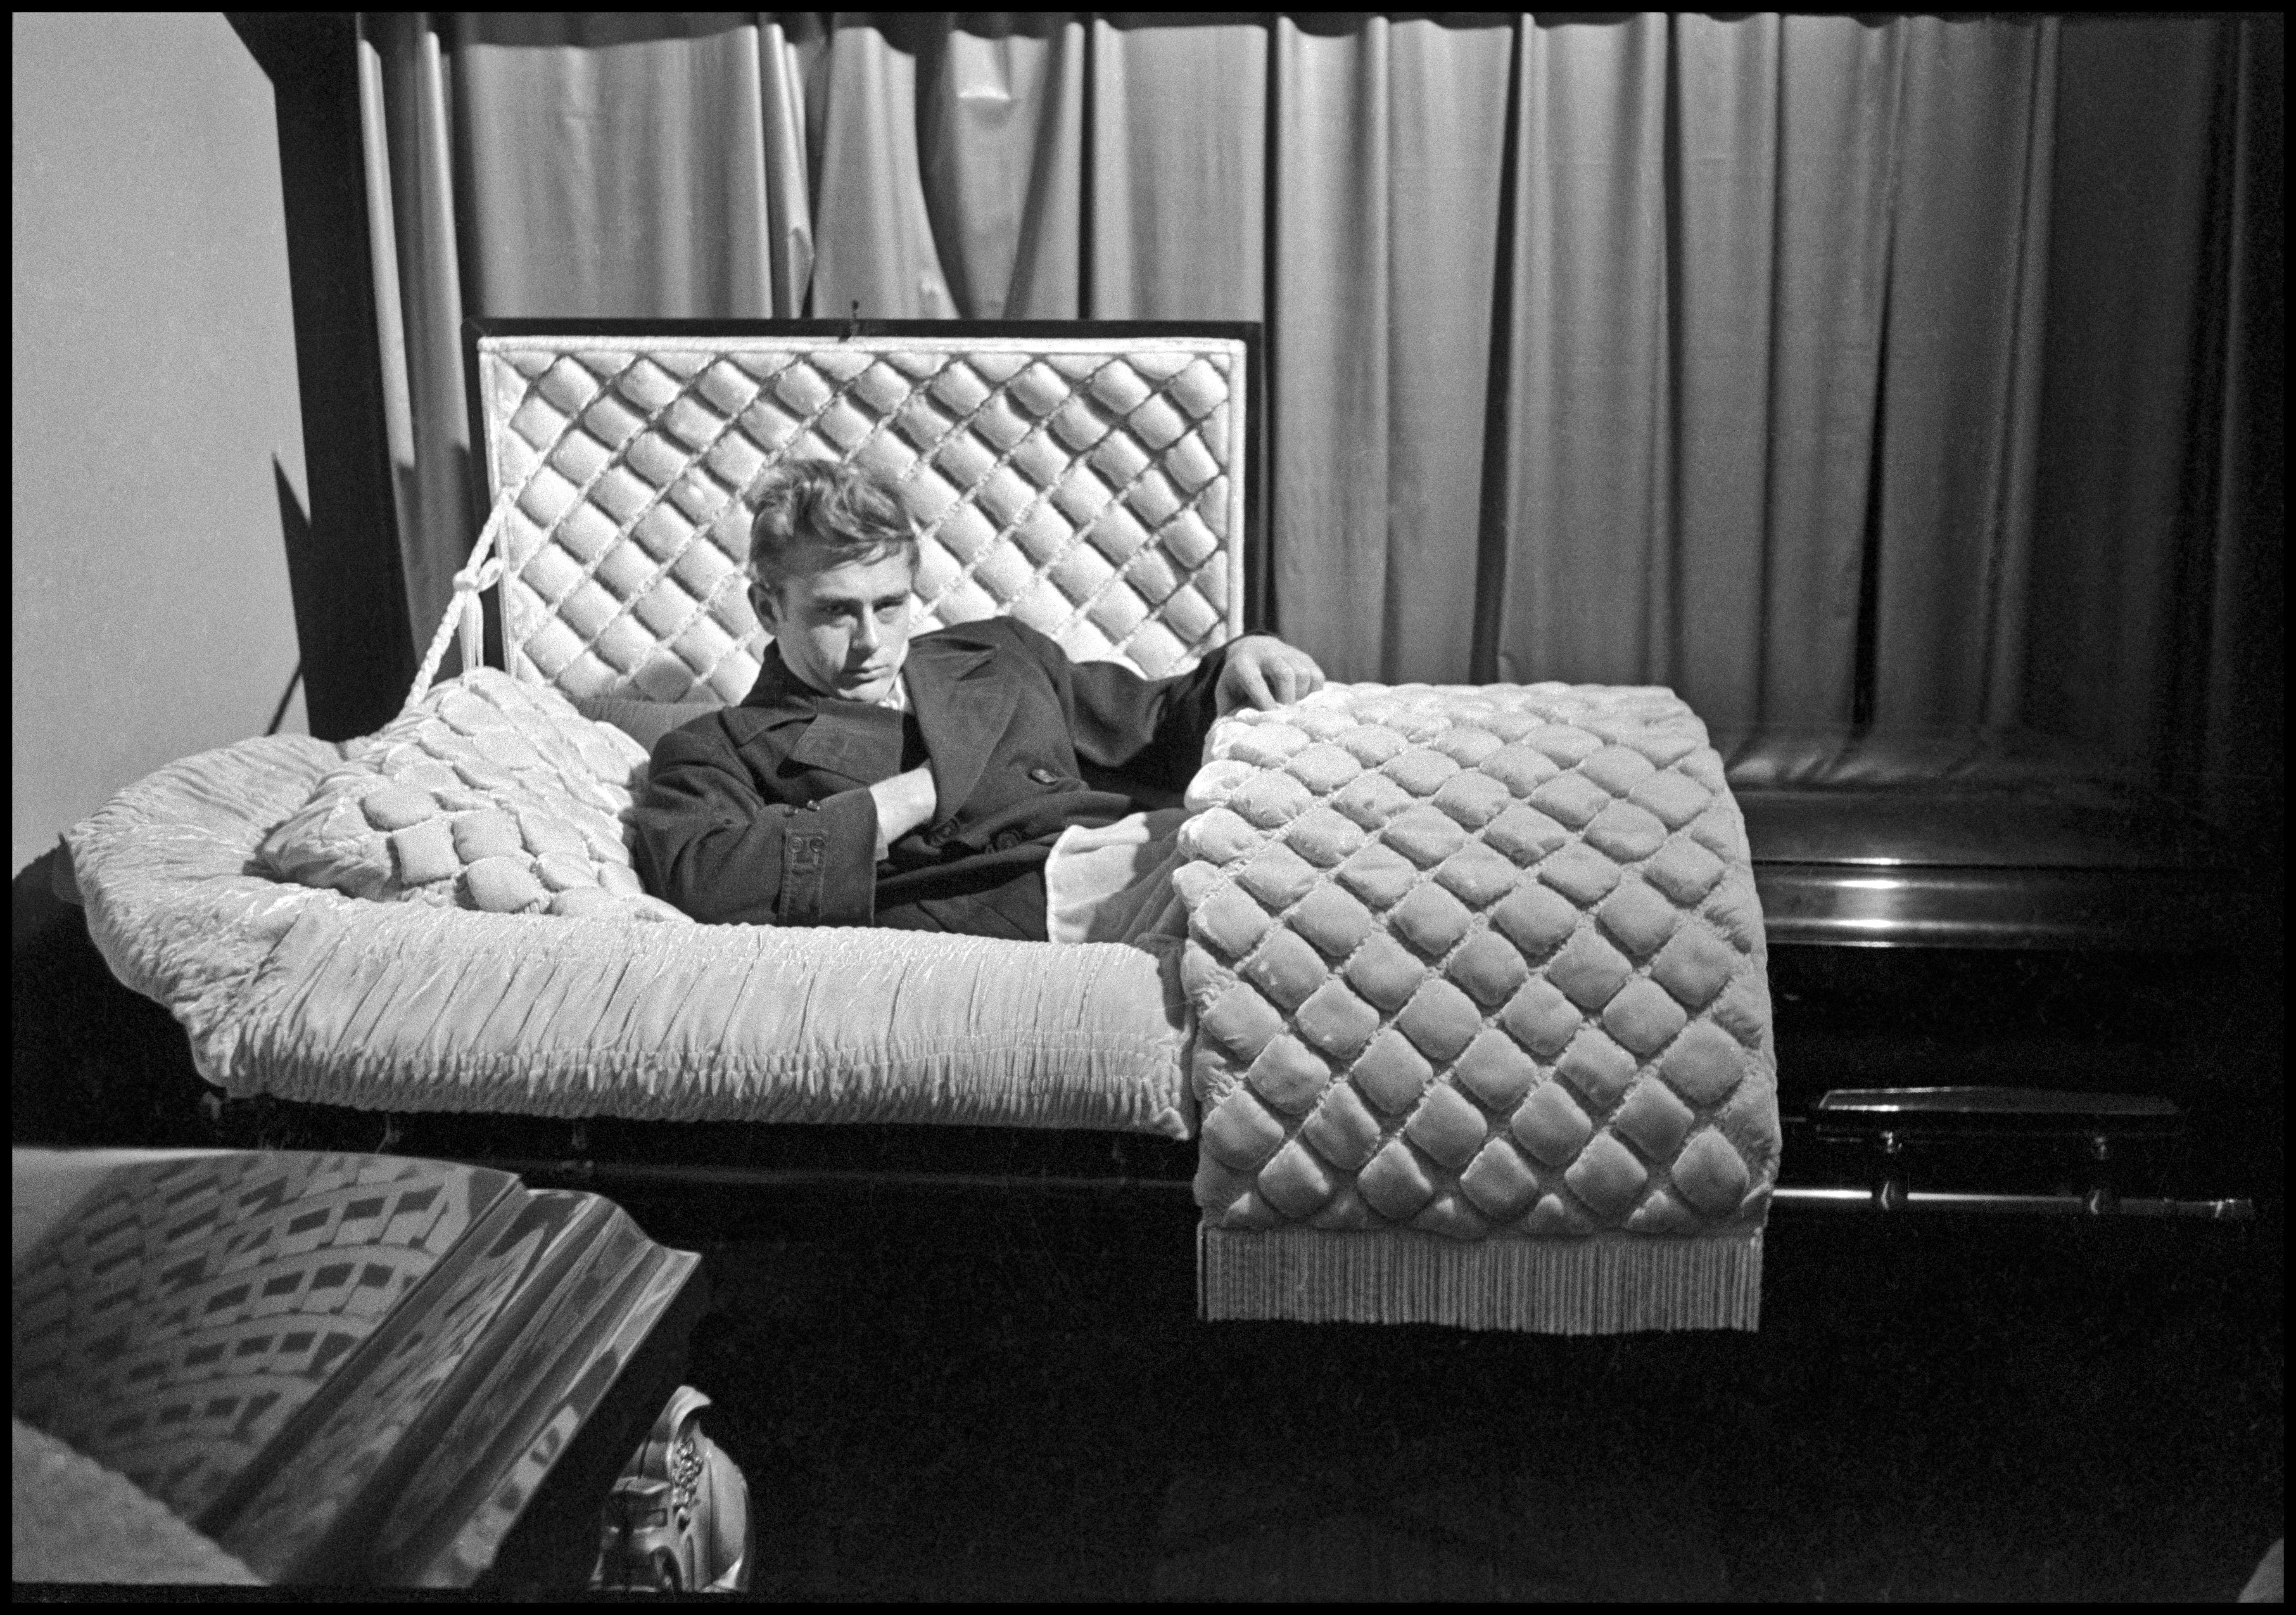 ames Dean, Fairmount, Indiana, USA, 1955. © Dennis Stock / Magnum Photos